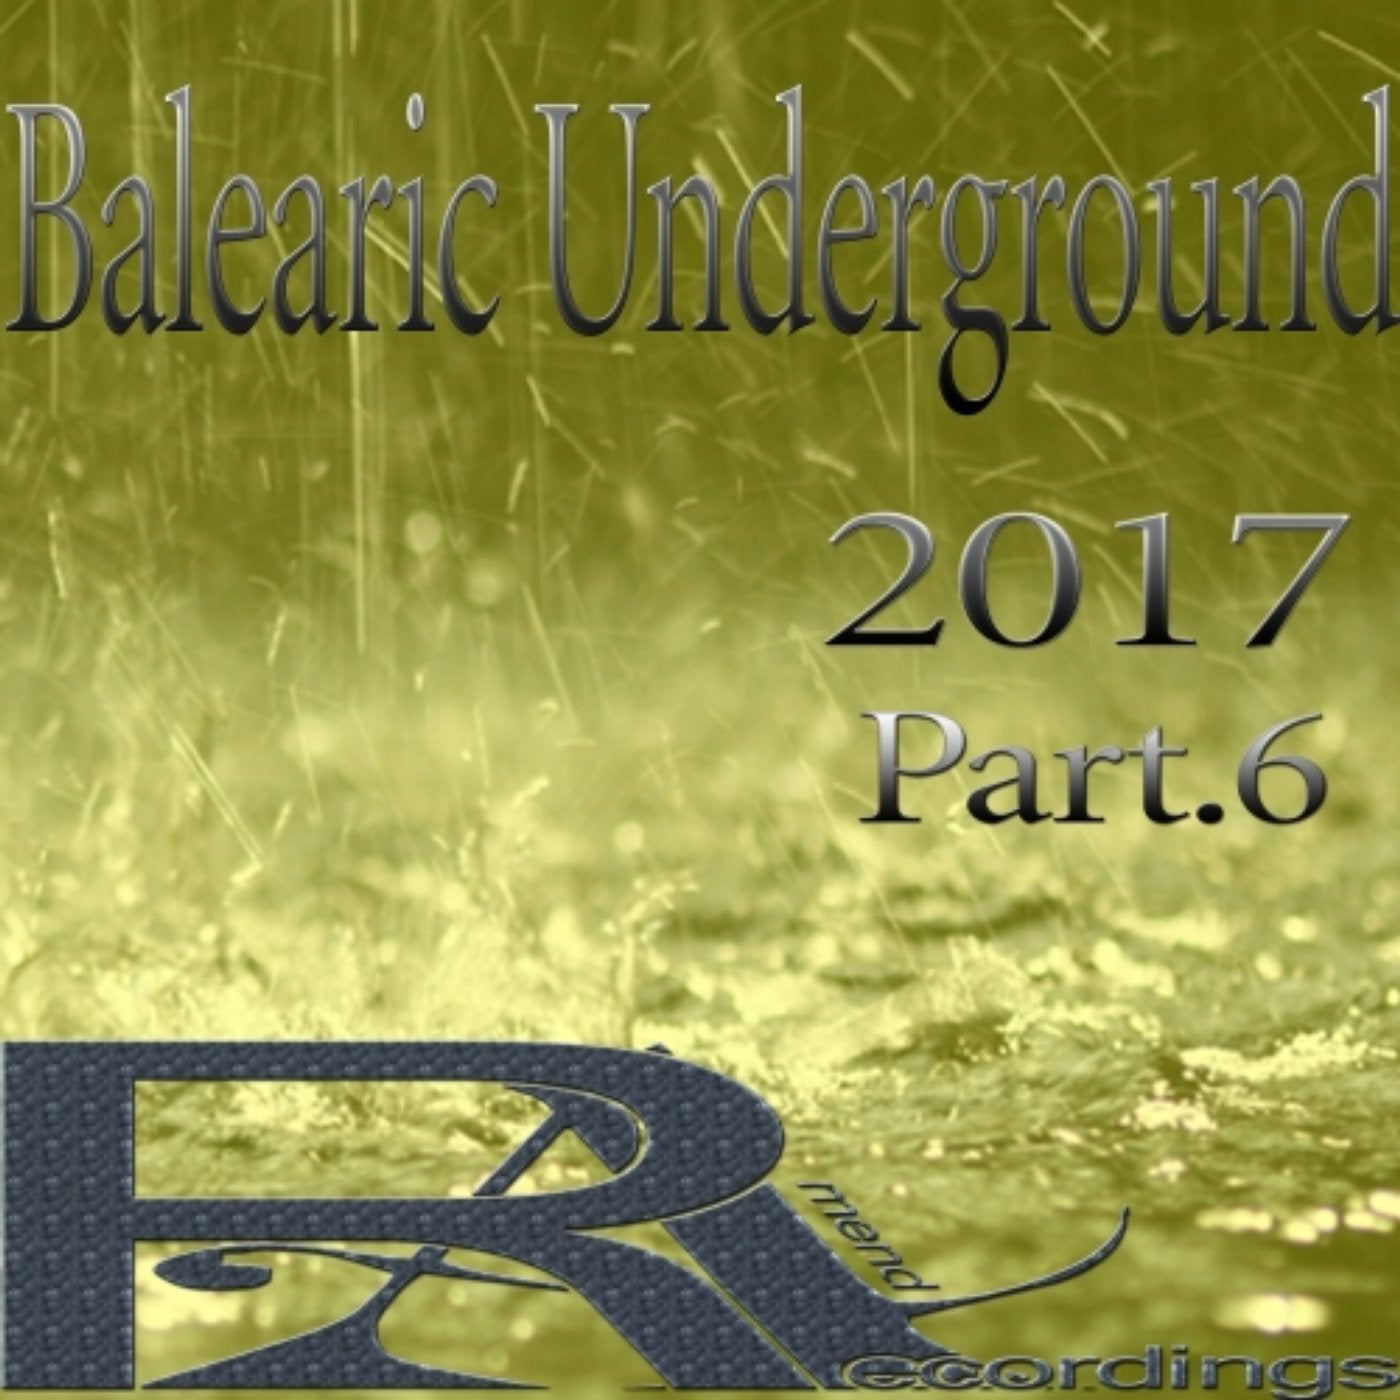 Balearic Underground 2017 (Part.6)